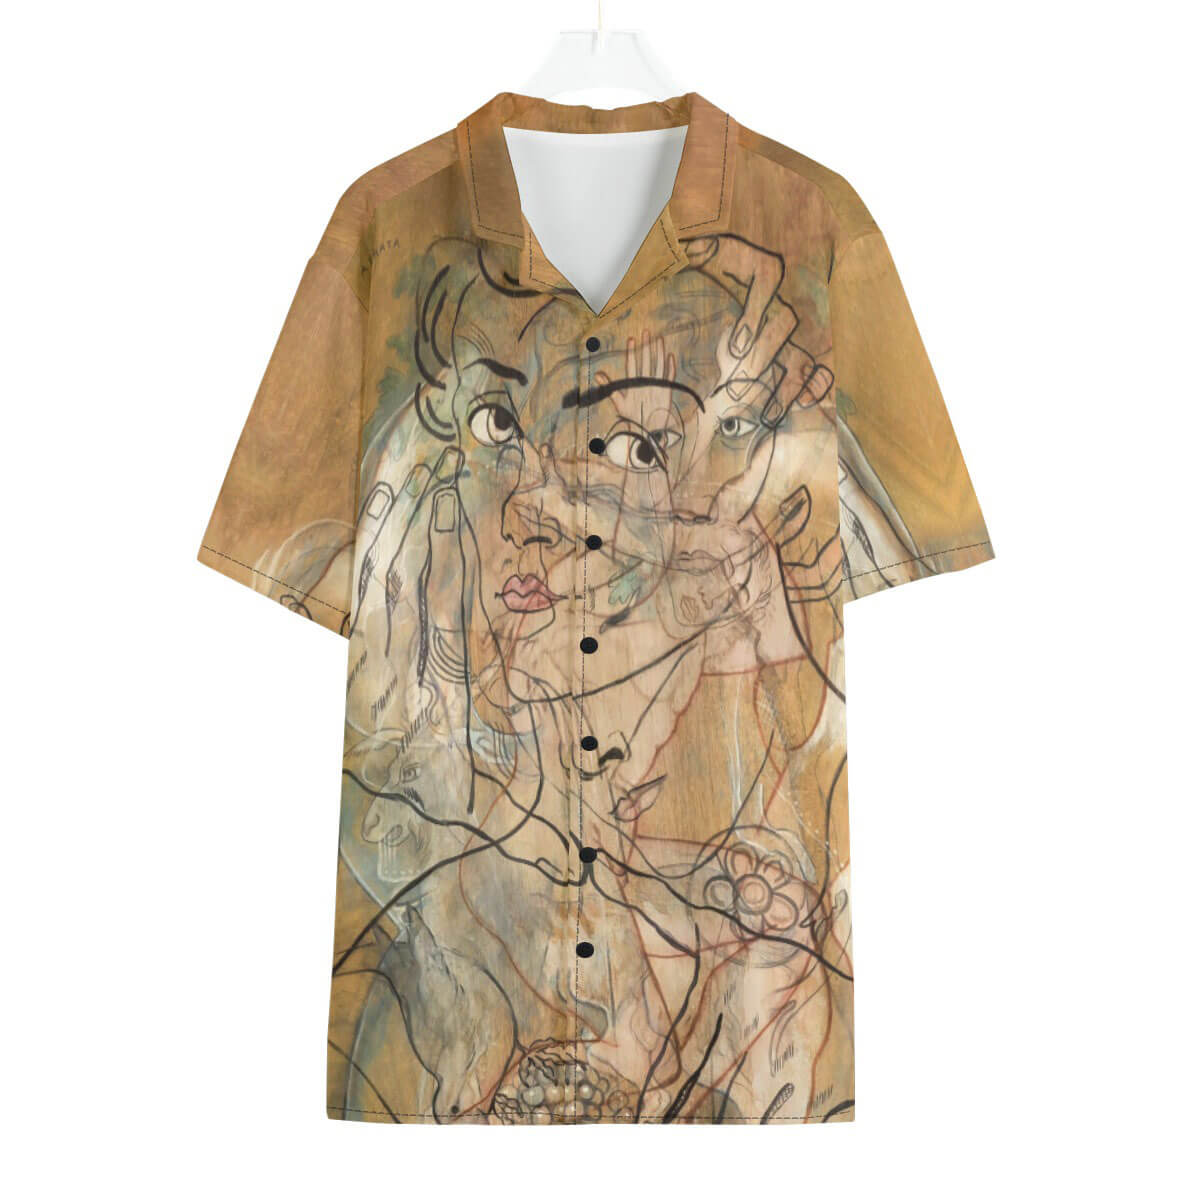 Atrata by Francis Picabia Hawaiian Shirt front view